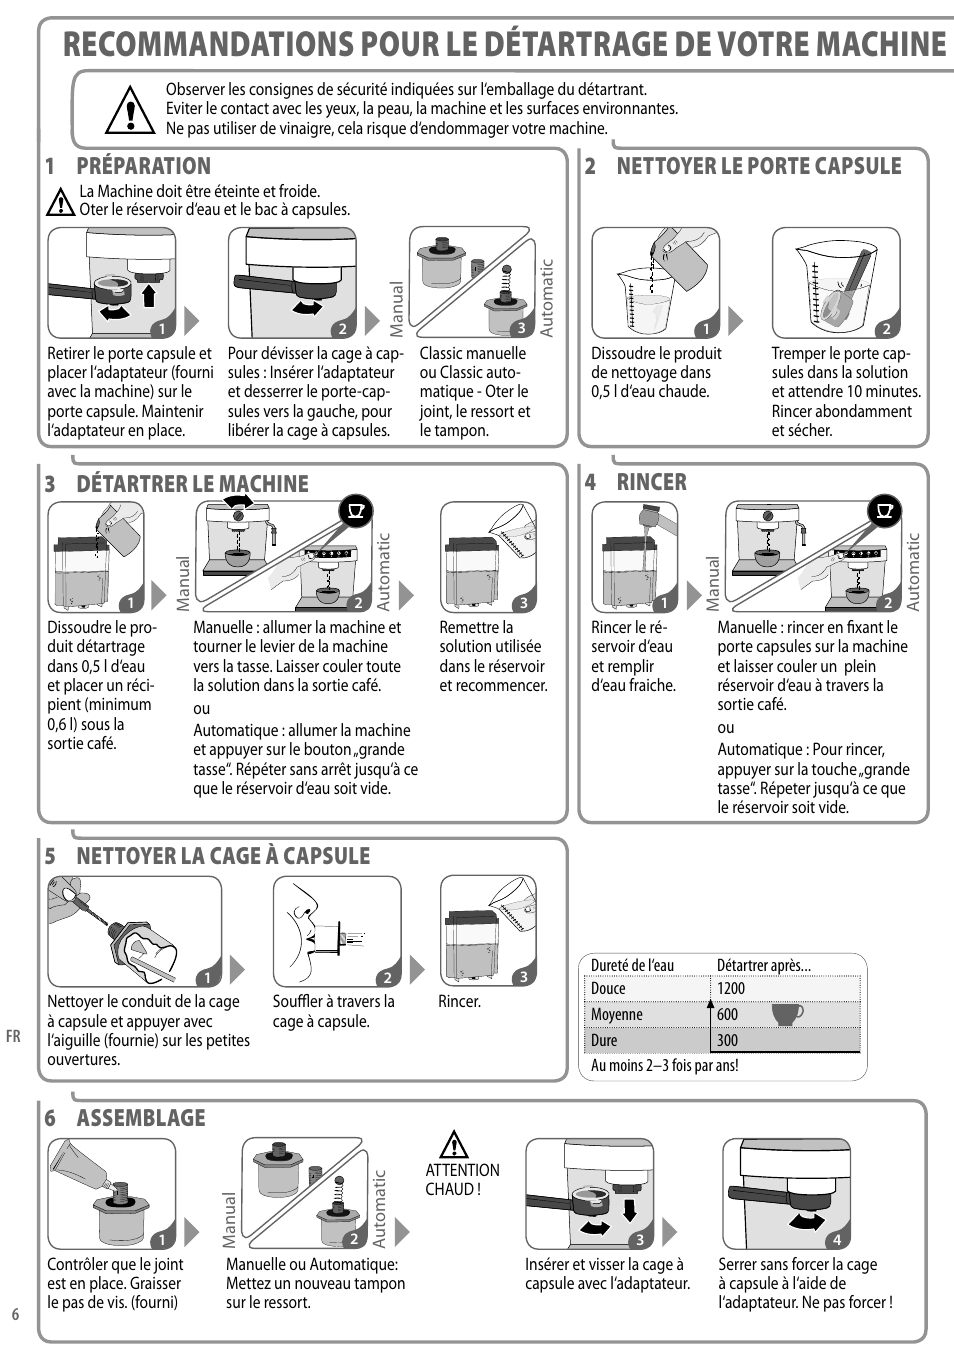 2 nettoyer le porte capsule, 1 préparation, 3 détartrer le machine |  Nespresso Coffeemaker User Manual | Page 6 / 11 | Original mode